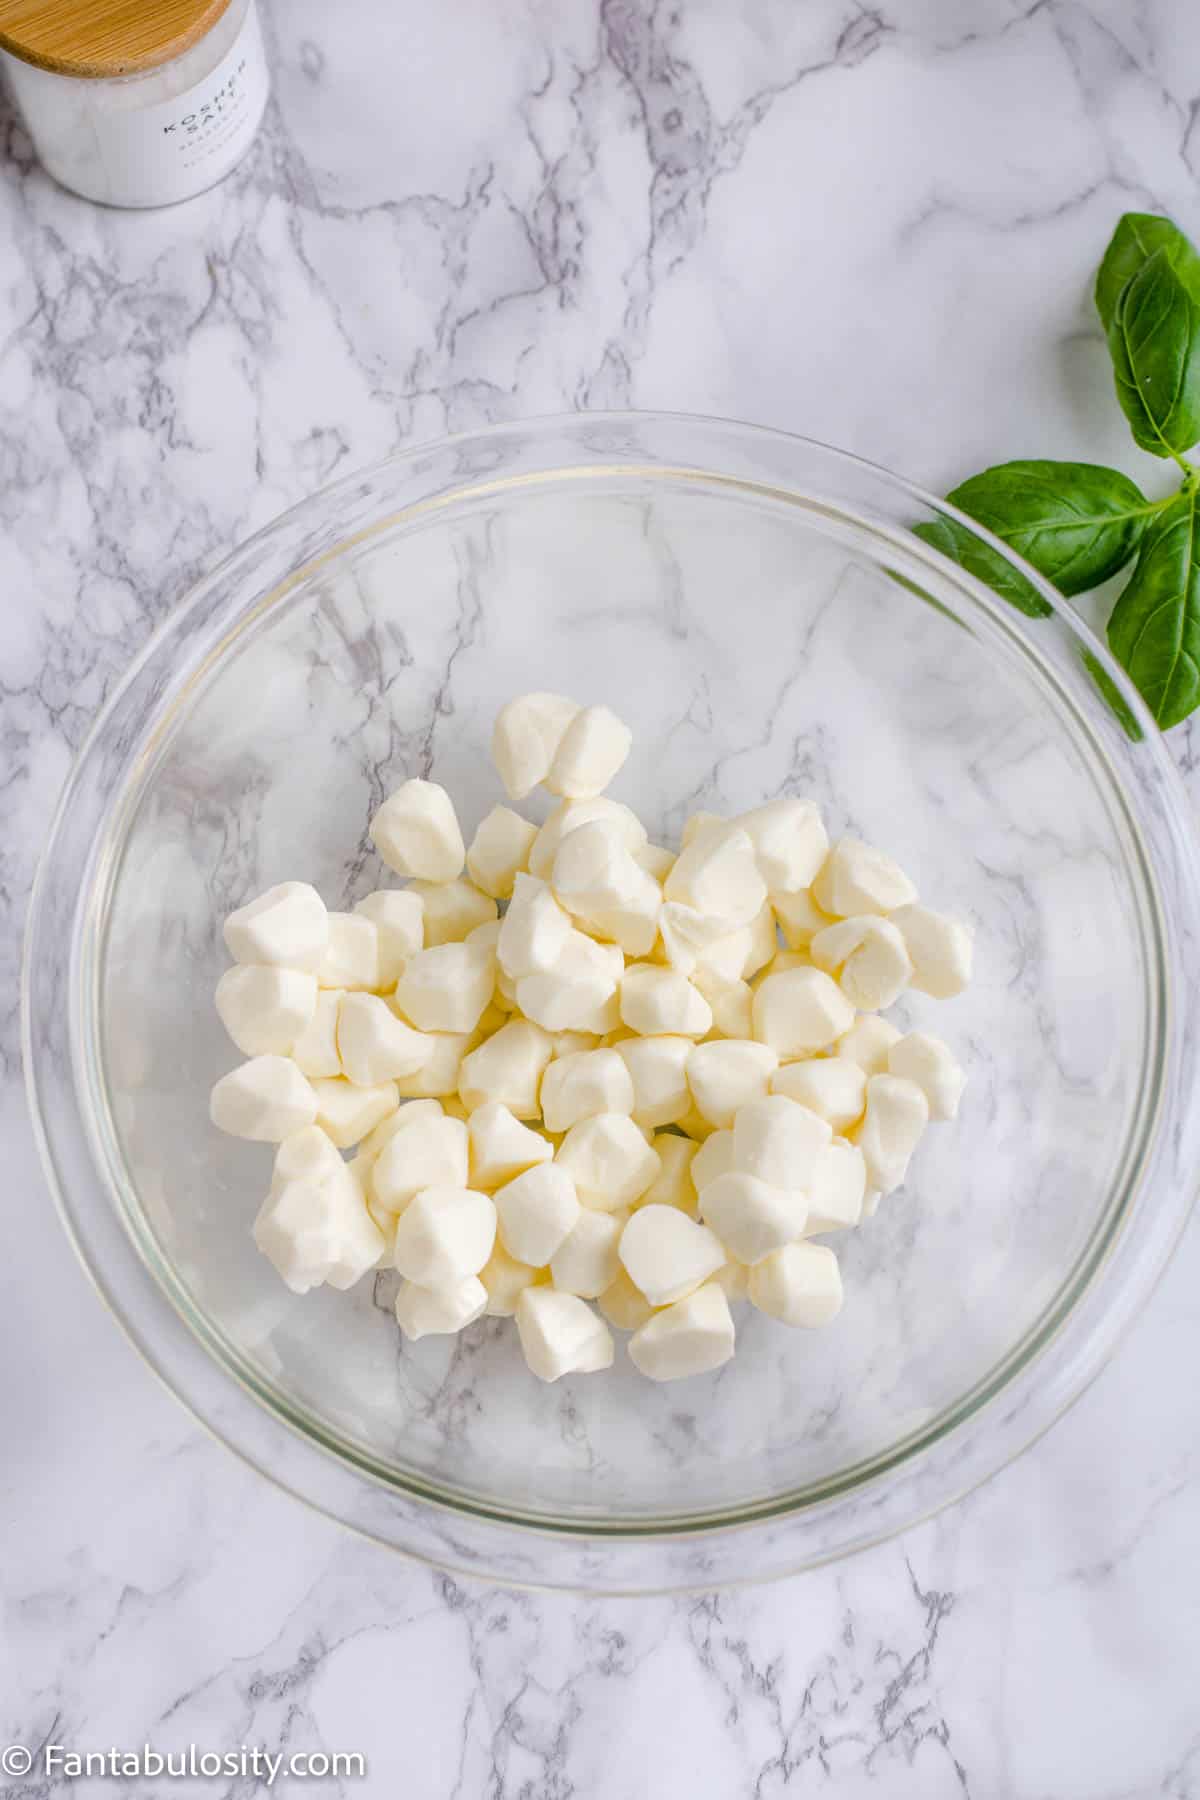 mozzarella pearls in glass bowl